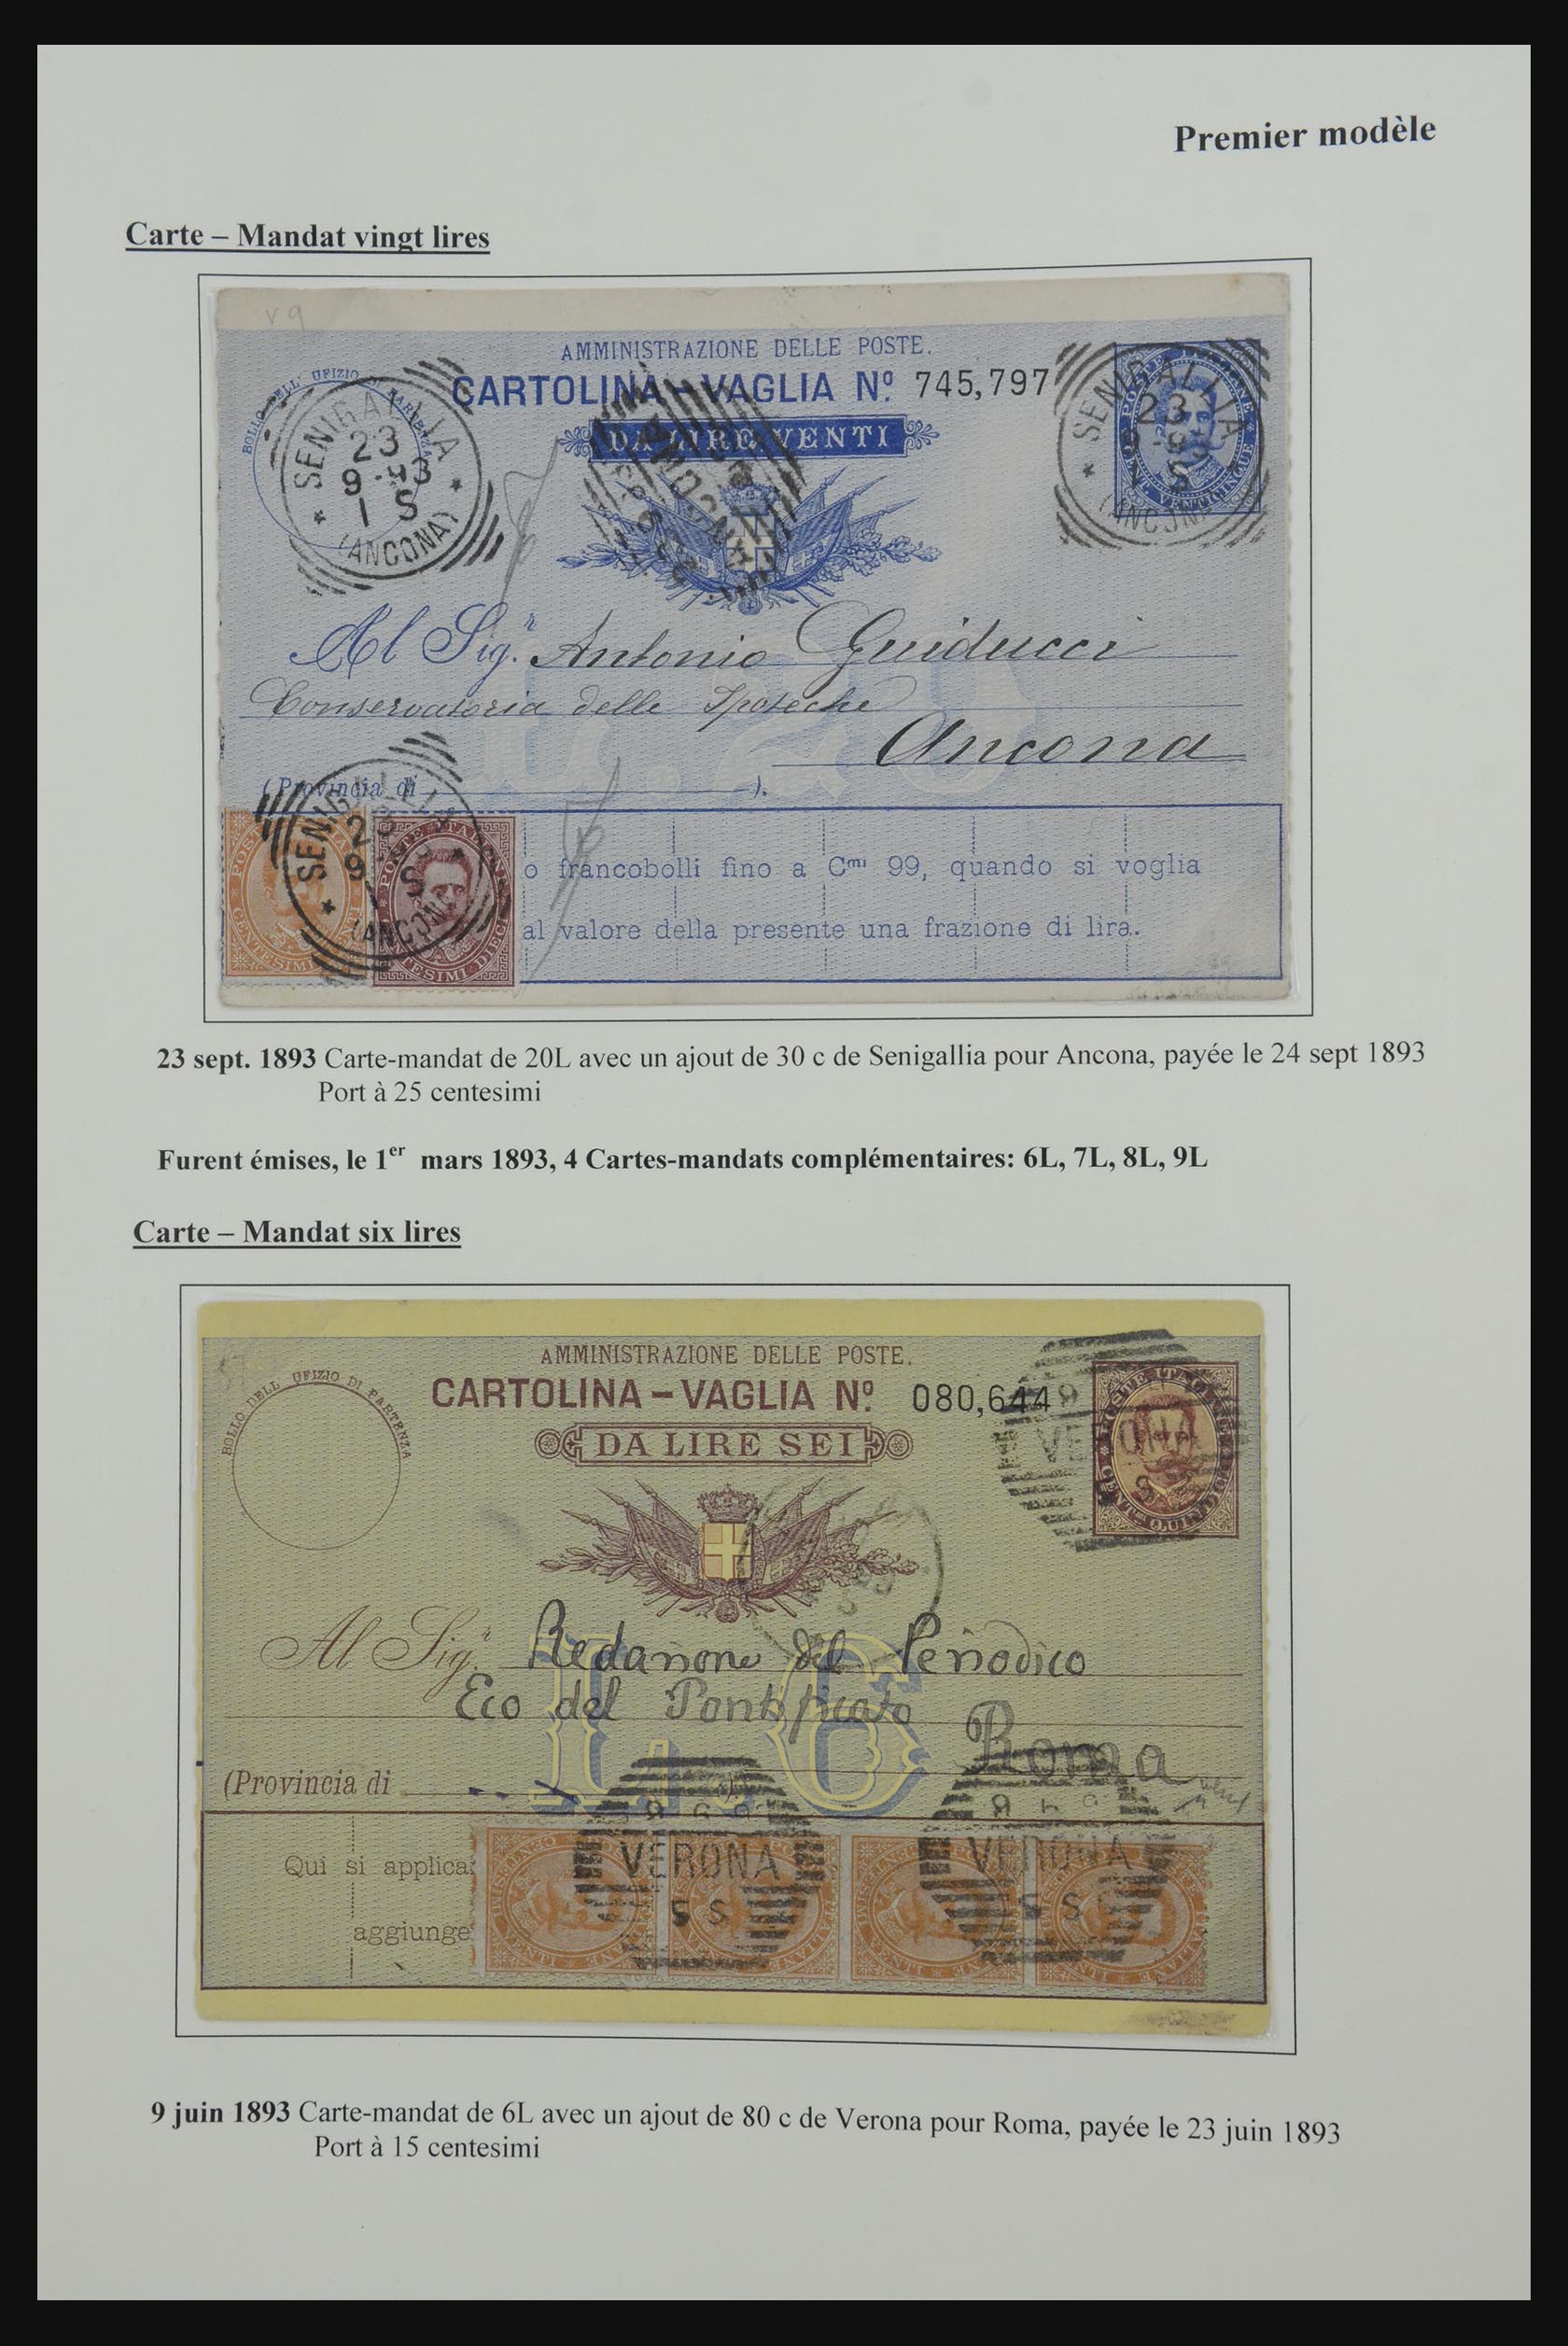 32243 007 - 32243 Italië postbewijskaarten 1892-1902.